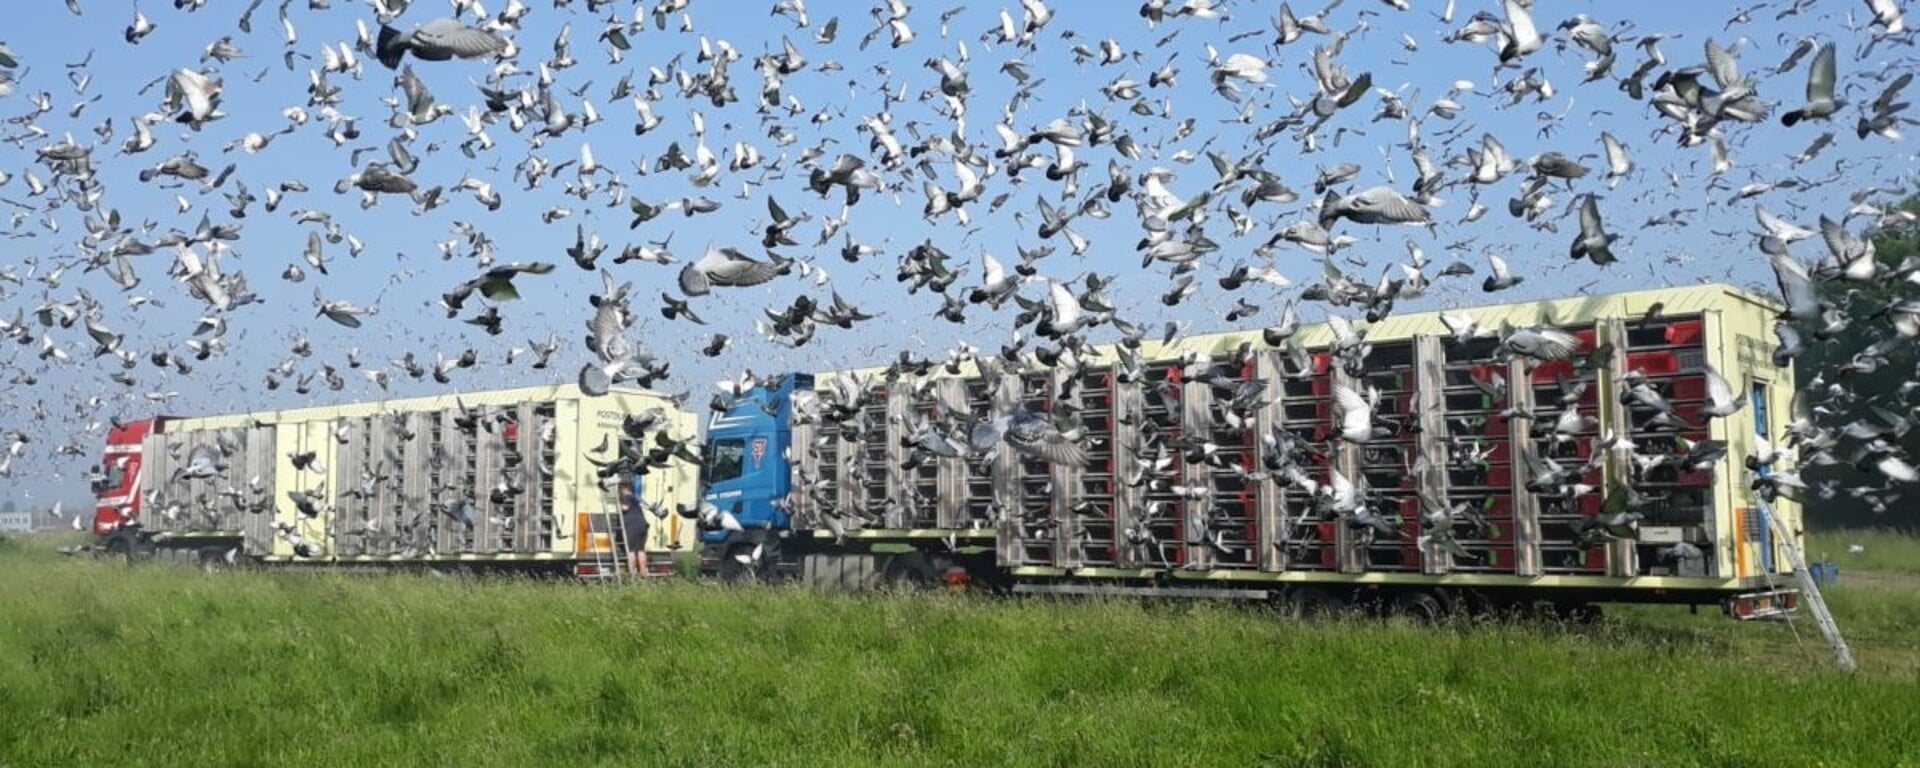 Het lossen van duiven, op naar huis. Foto: PR